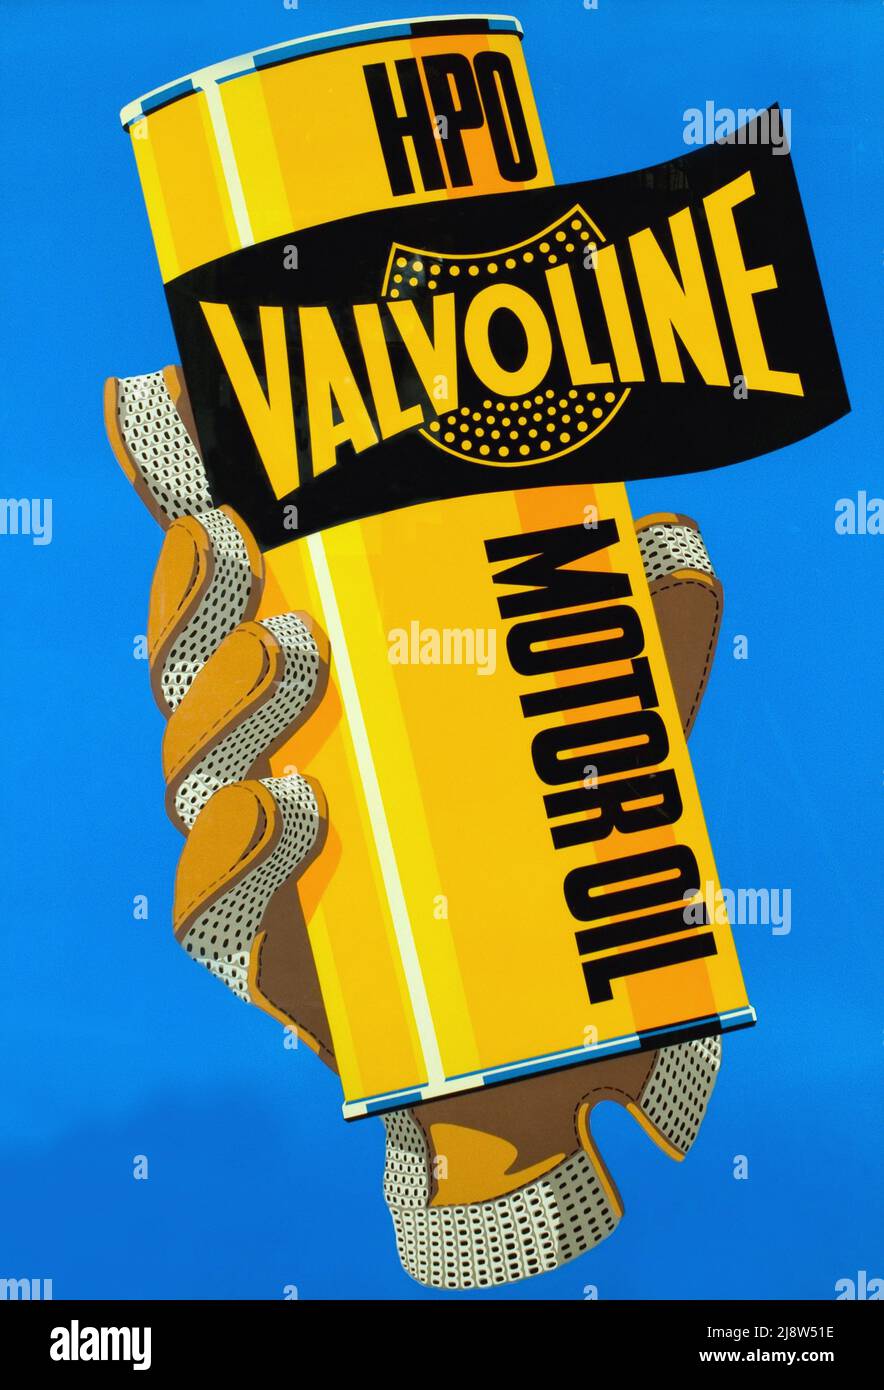 Vintage 1950s Advertising poster for - Valvoline Motor Oil Stock Photo